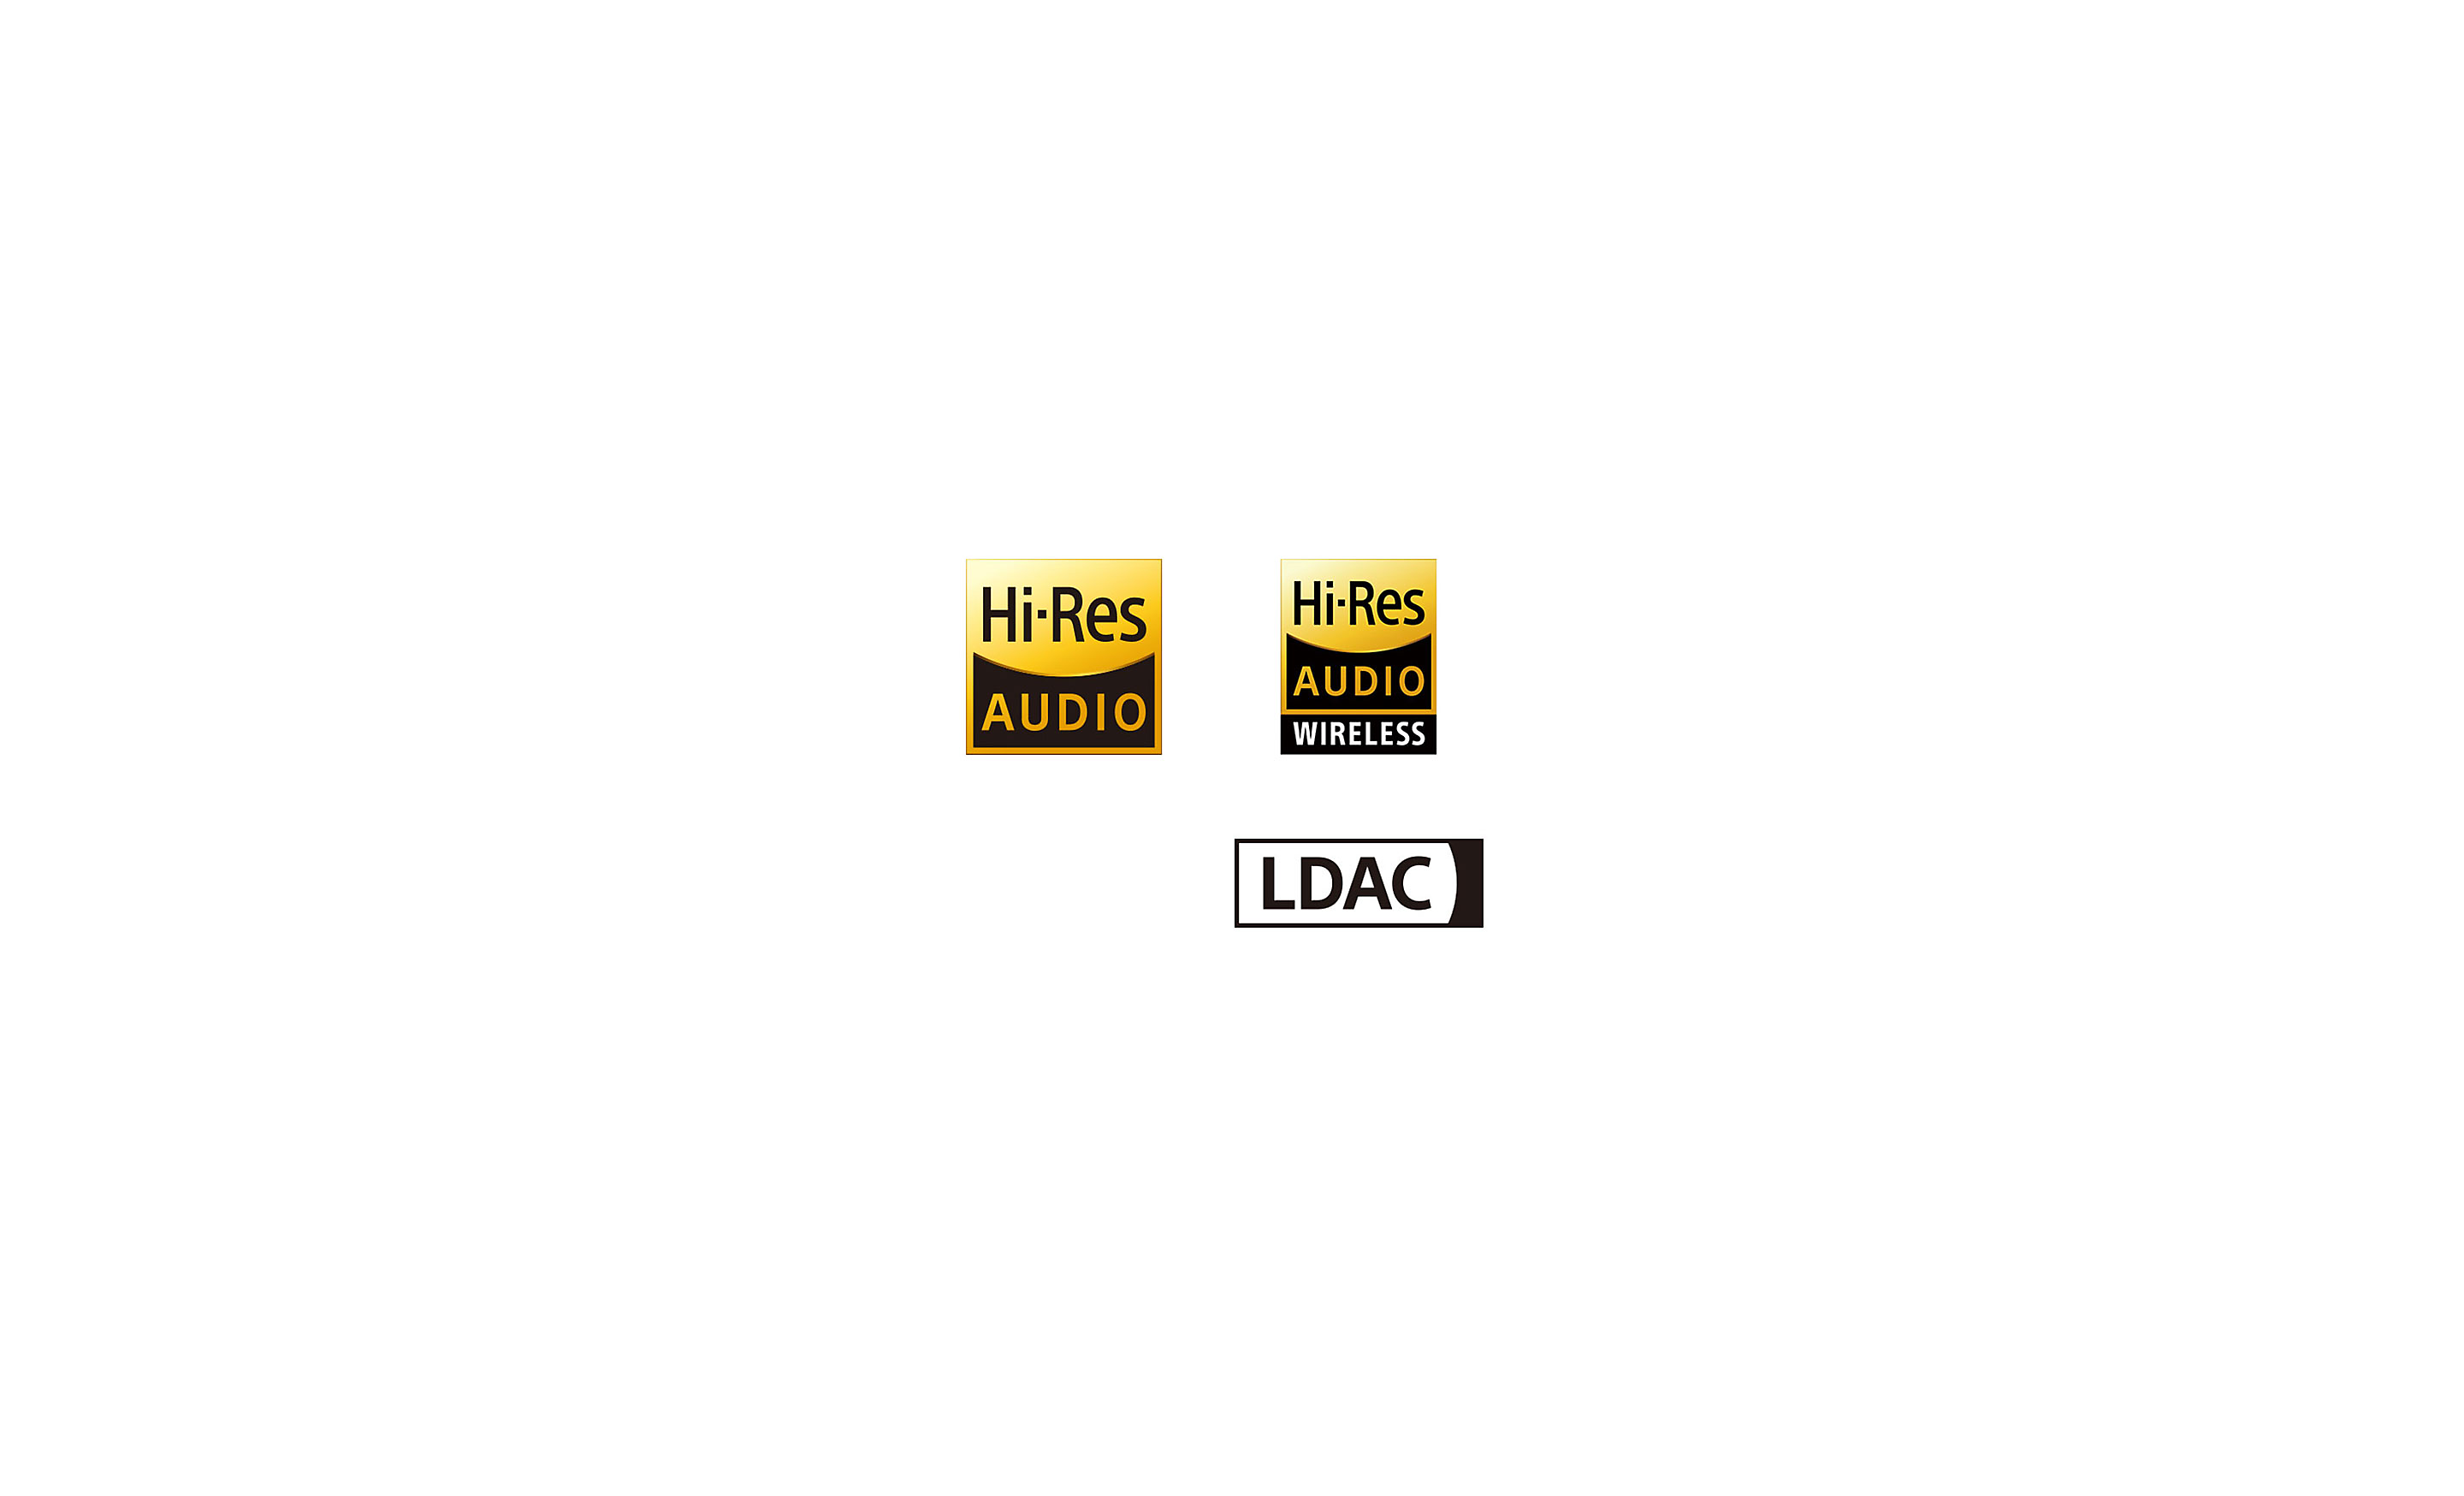 Logo's van Hi-Res Audio, High-Res Audio Wireless en LDAC.